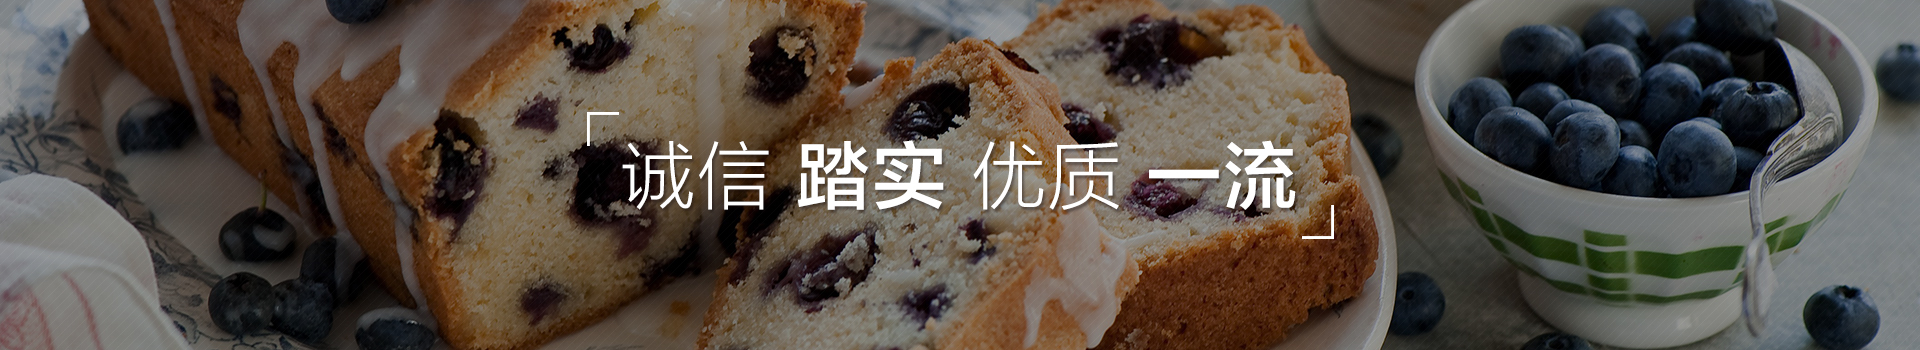 上海汉珏精密机械有限公司,多功能包馅机,酥饼机,包子馒头生产线,蛋糕机,曲奇机